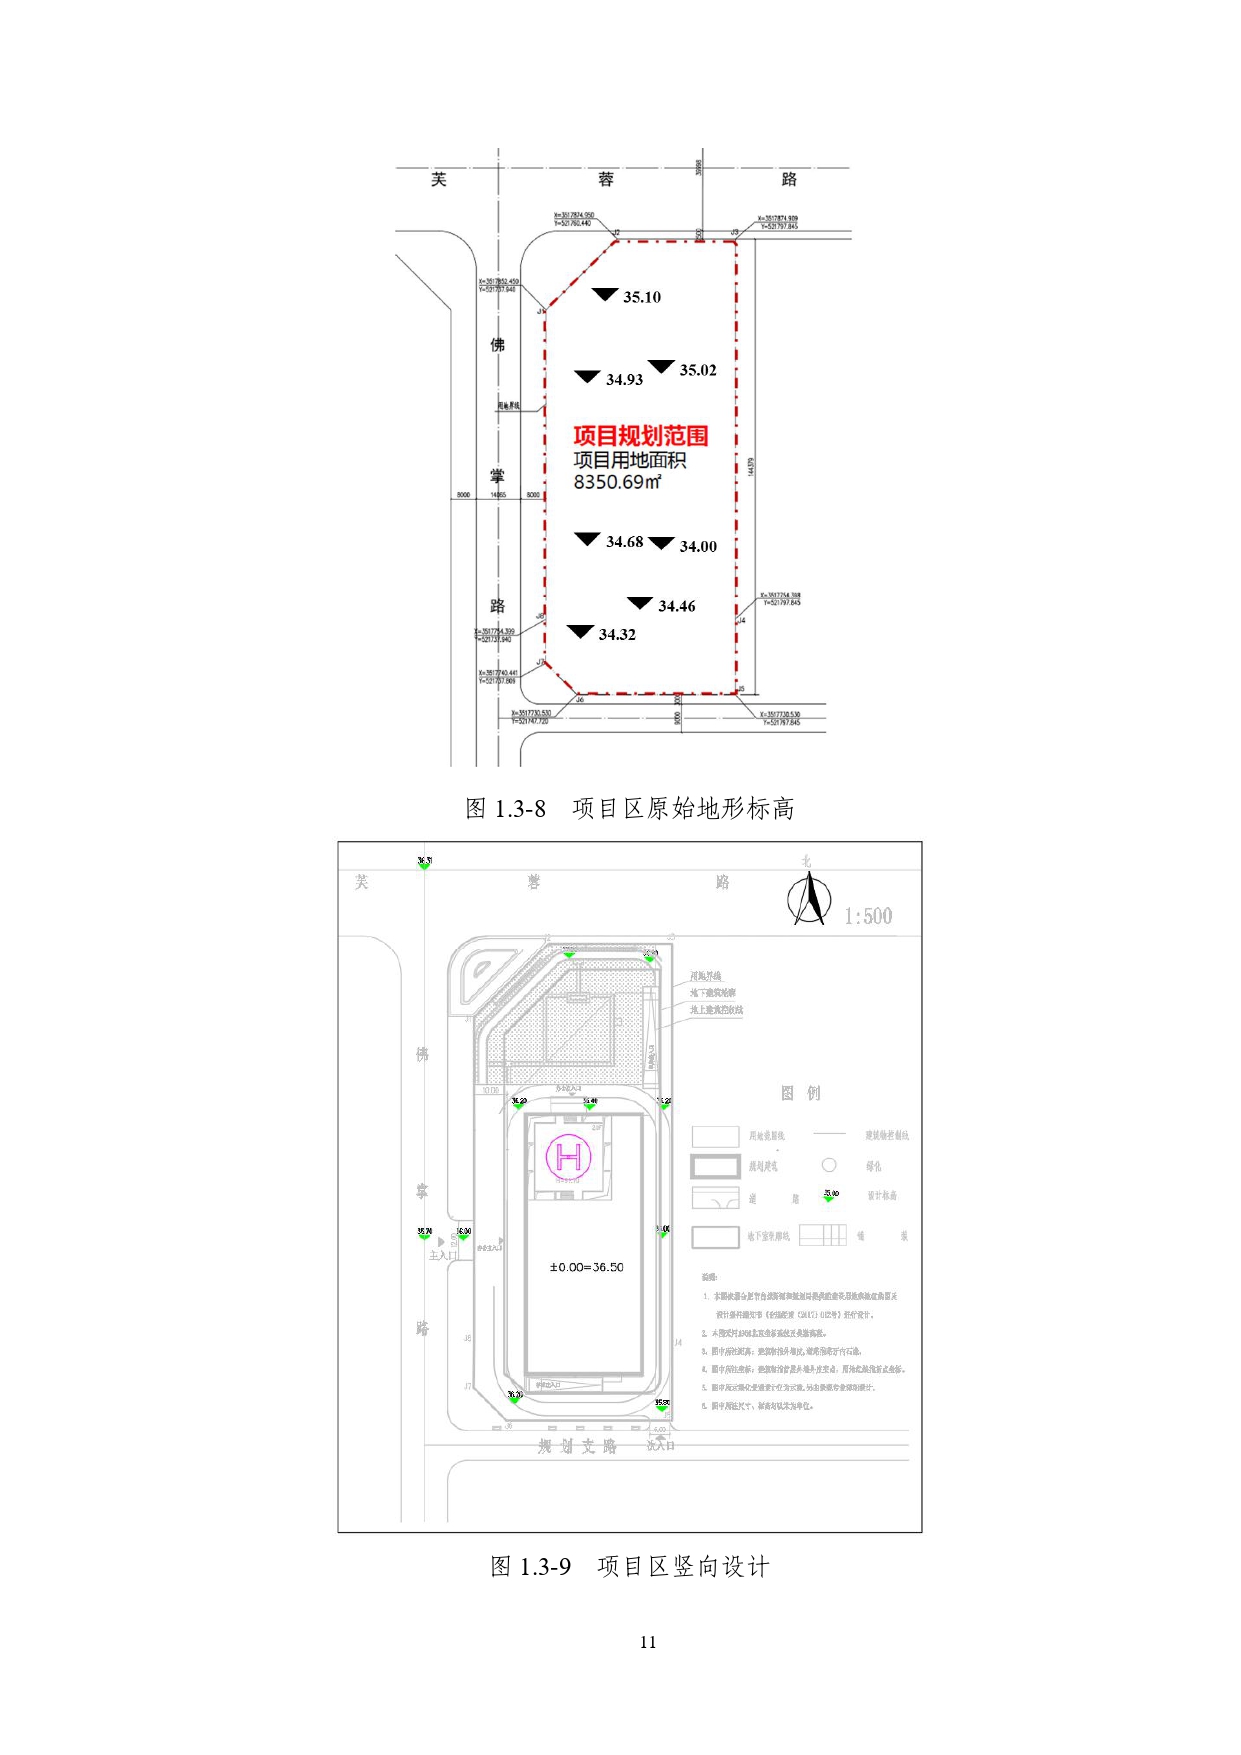 01-中果广场大厦项目水土保持报告表-打印_page-0022.jpg